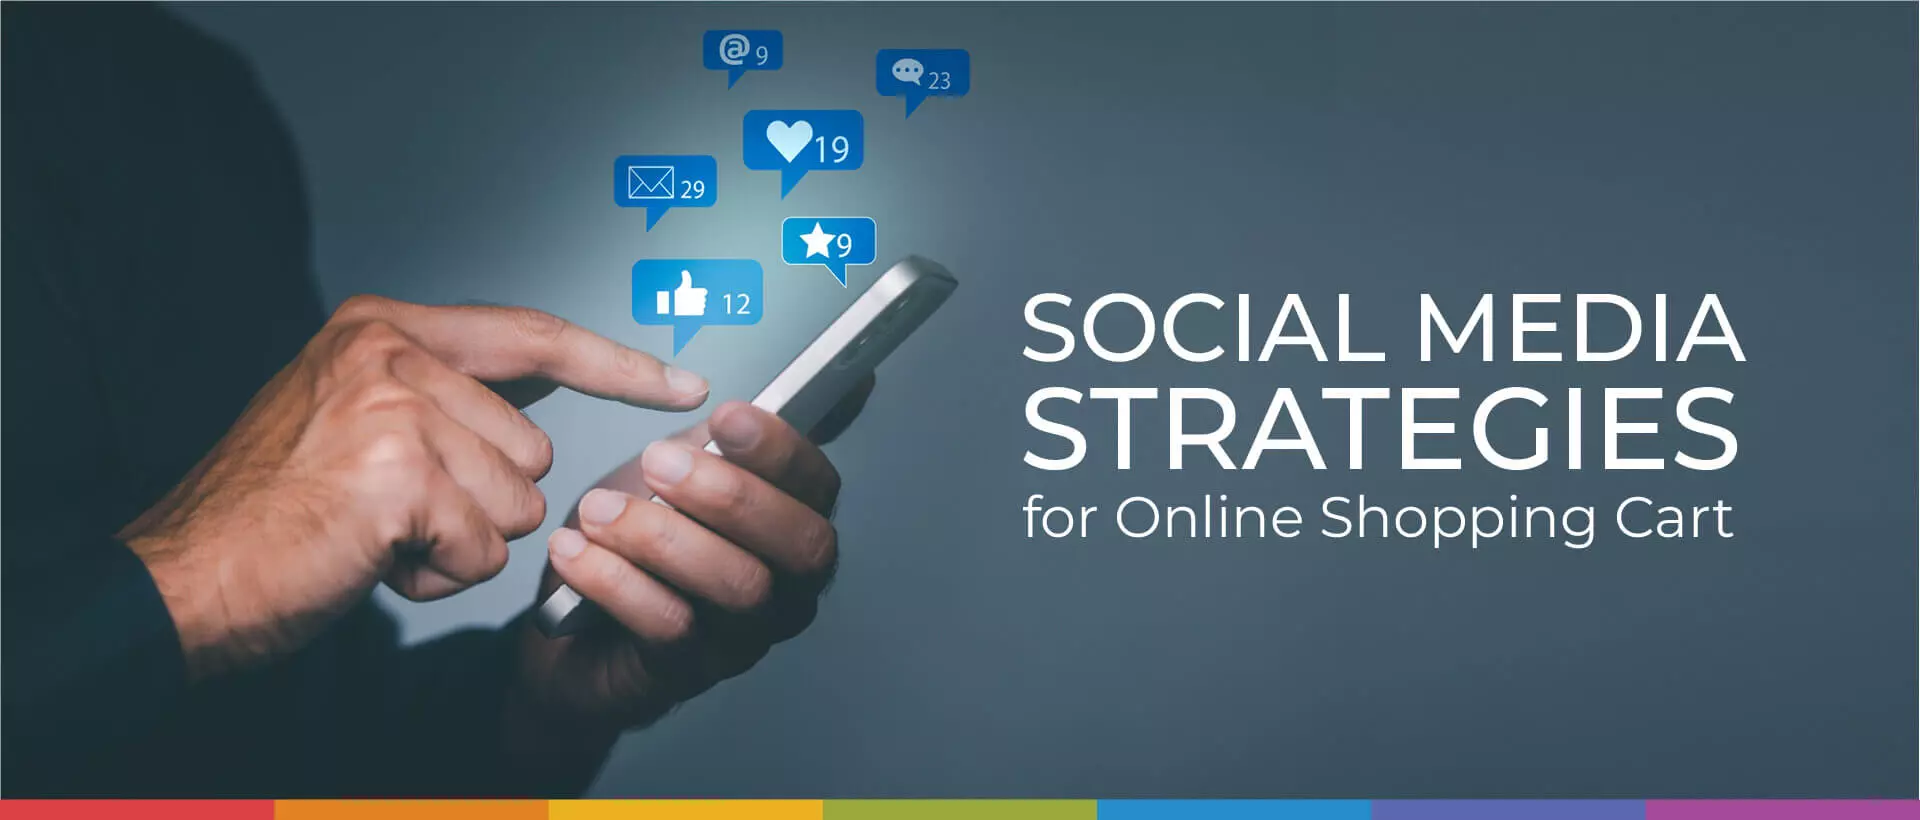 Social media strategies for online shopping cart